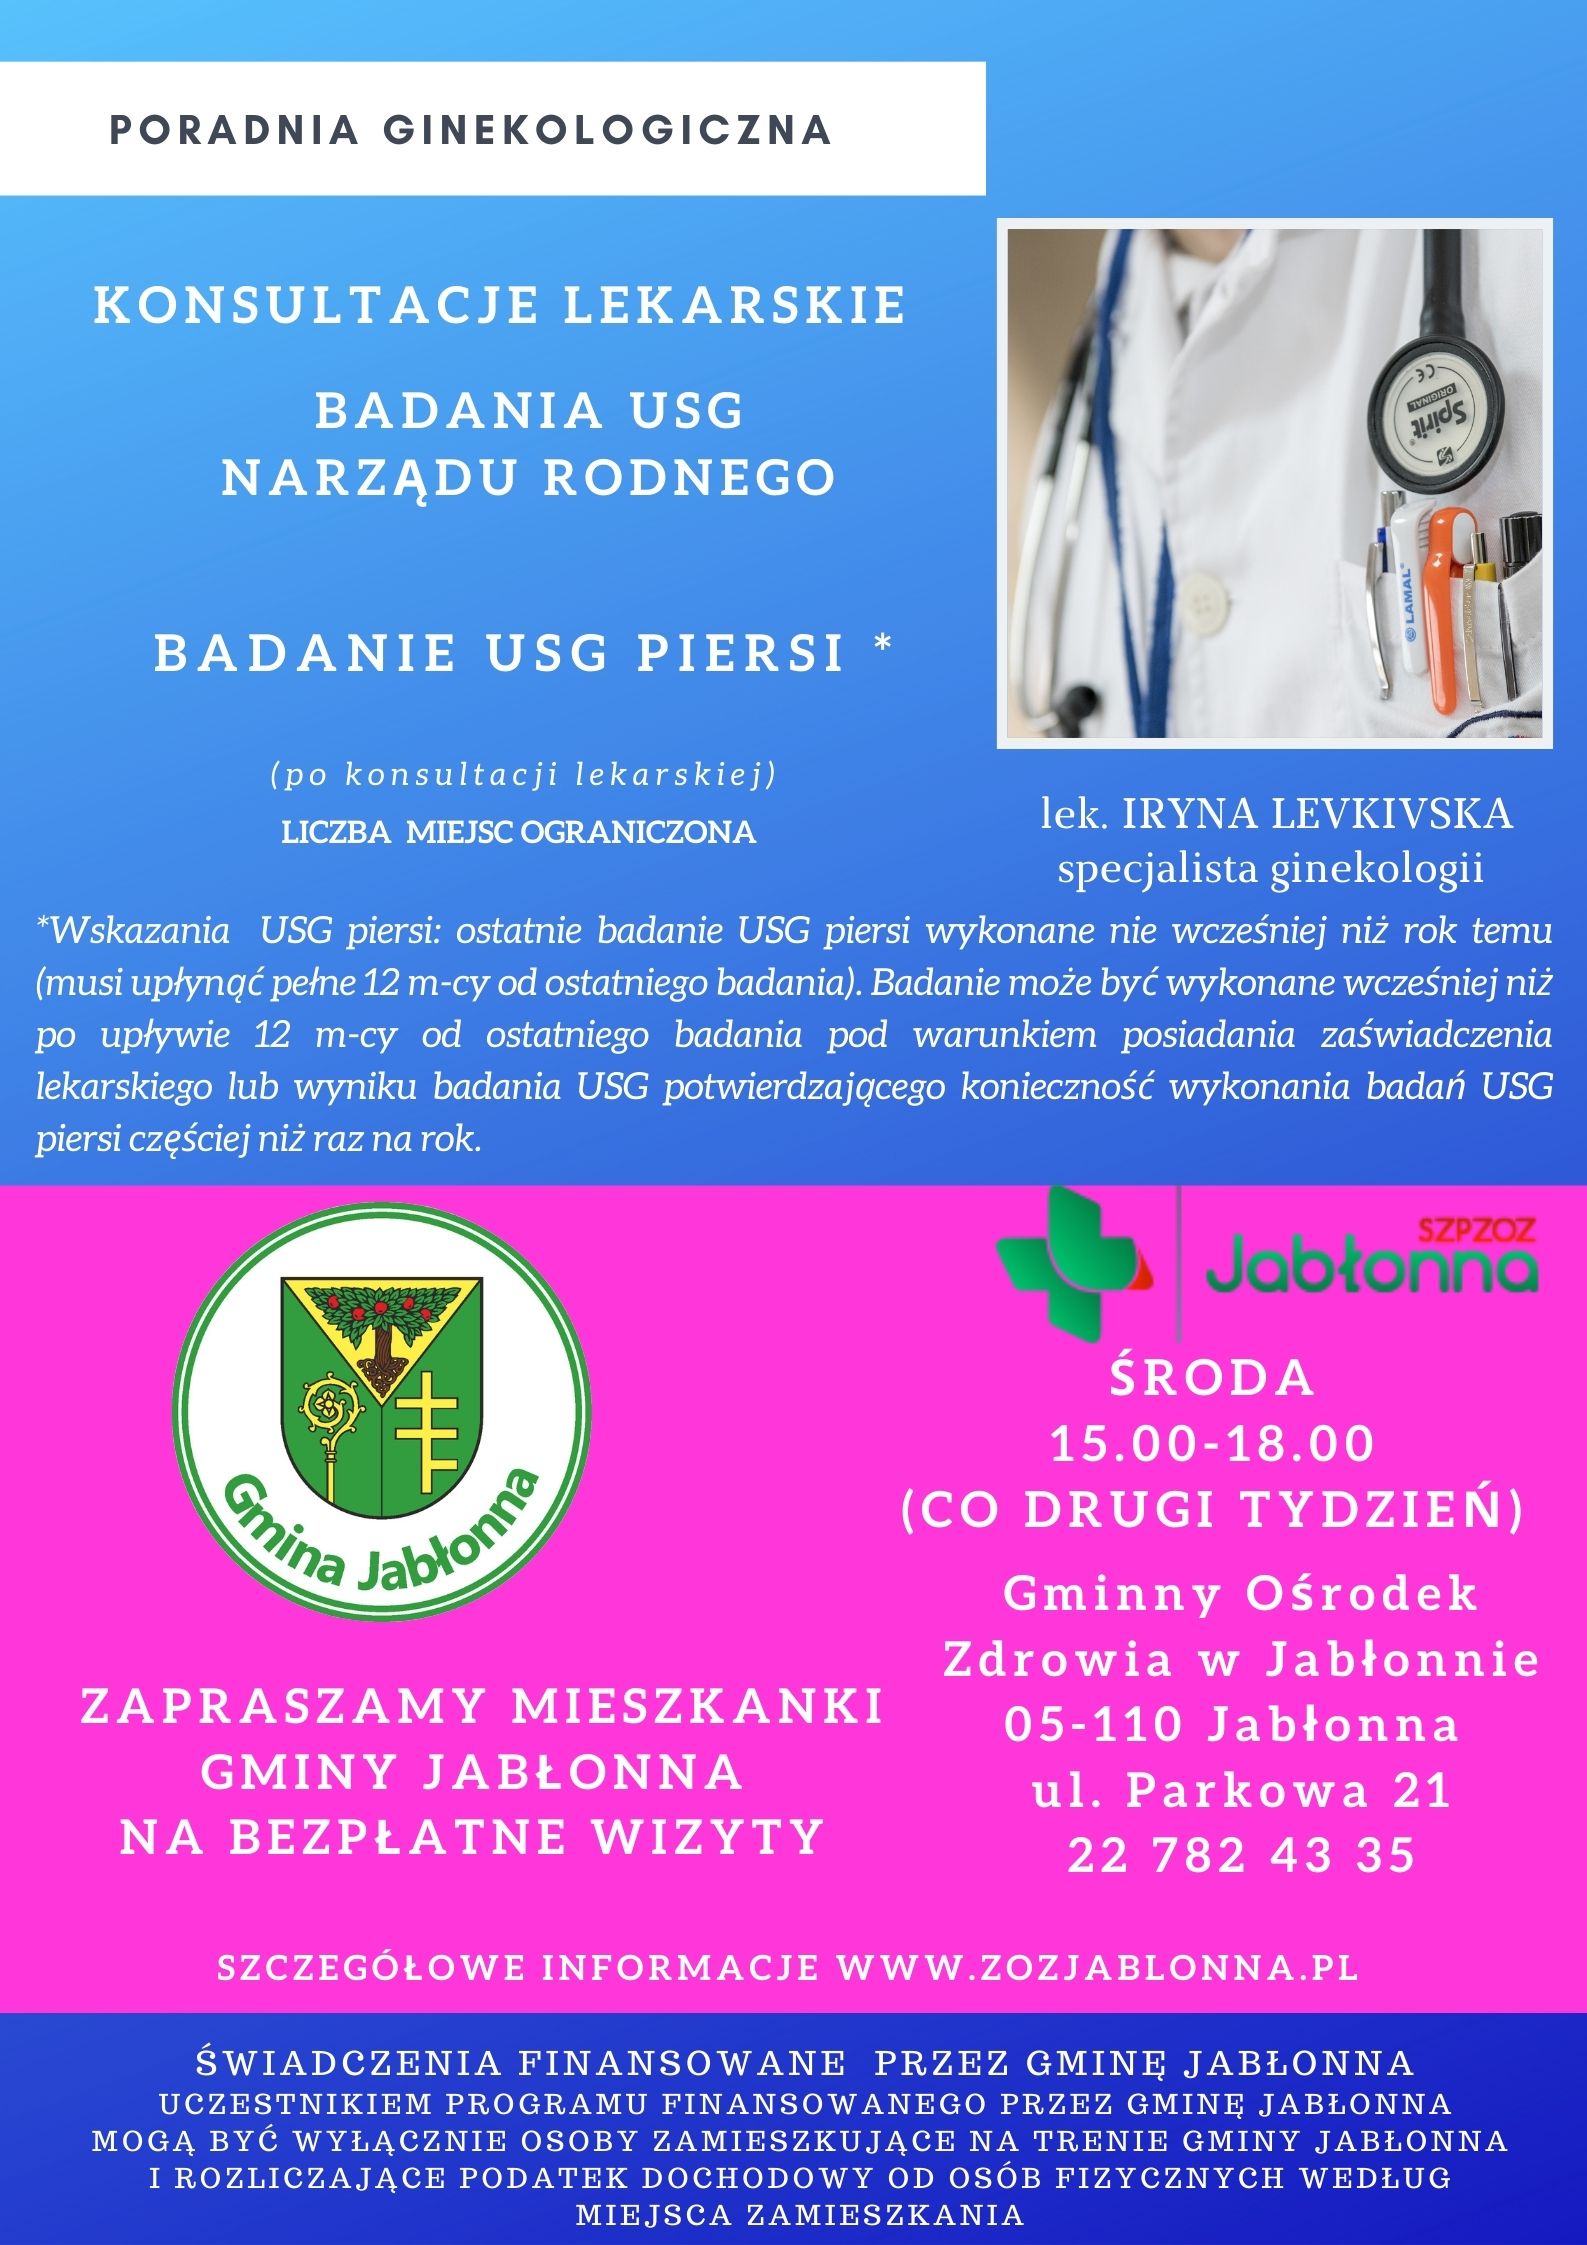 plakat informujący o bezpłatnych konsultacjach lekarskich w poradni ginekologicznej dla mieszkanek Gminy Jabłonna